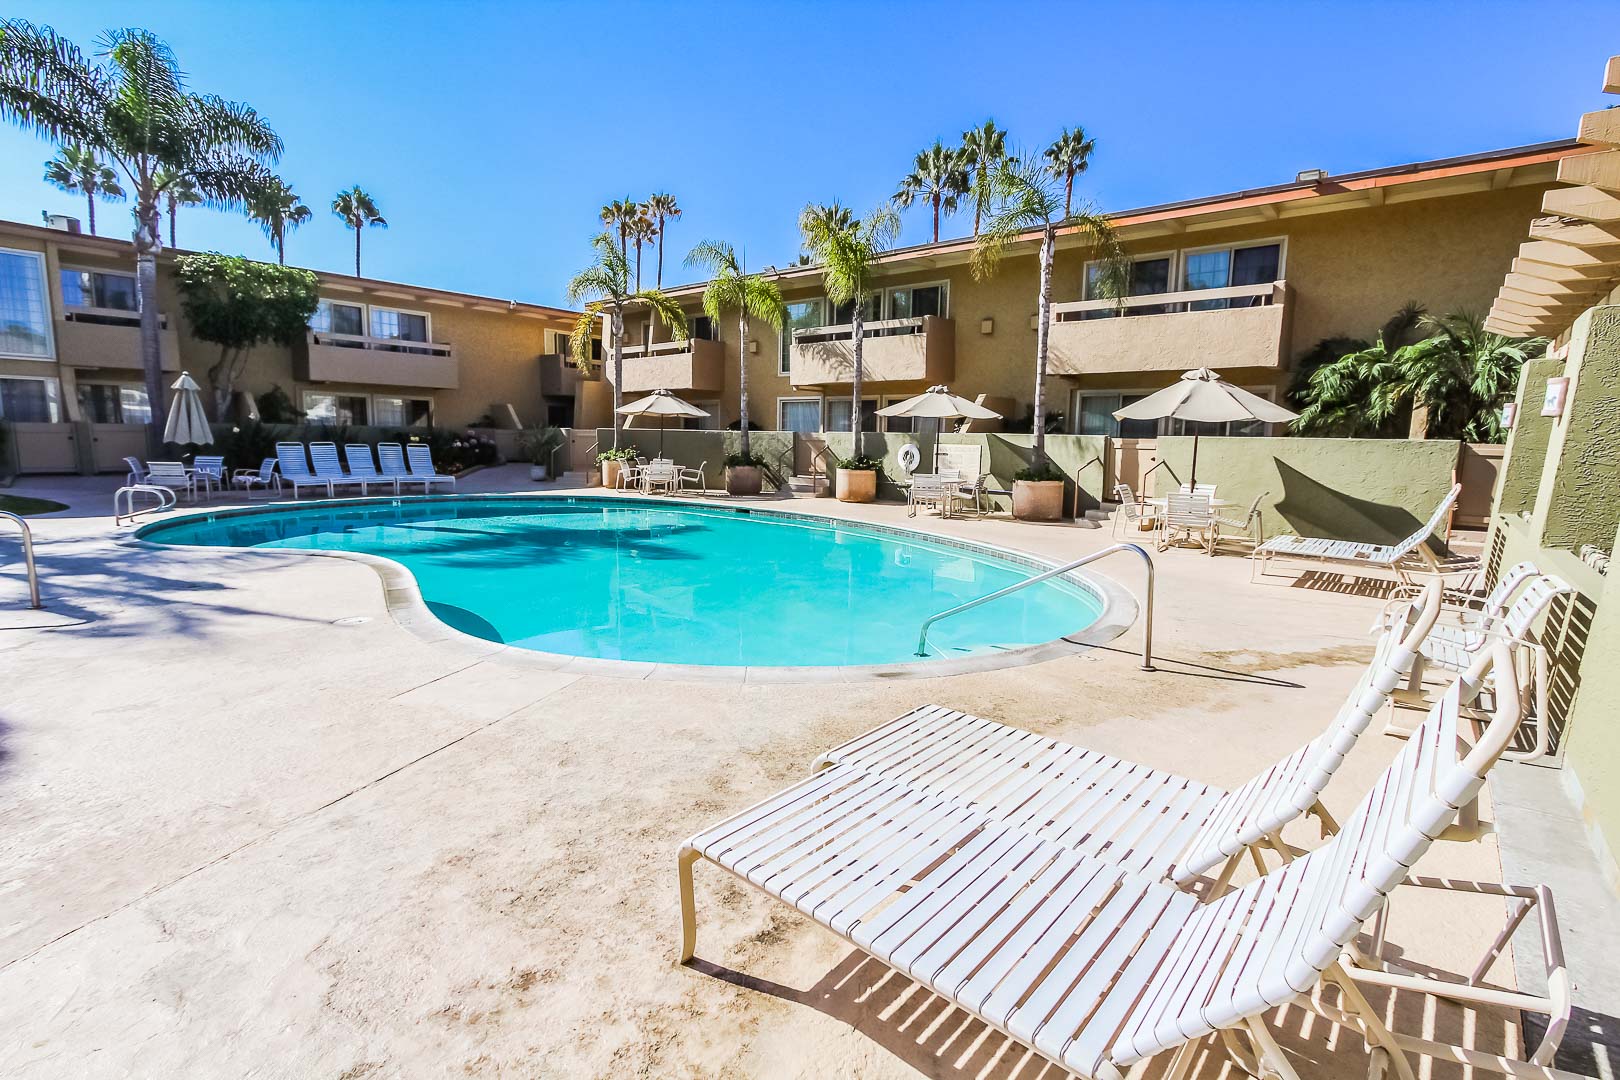 A spacious outdoor swimming pool at VRI's Winner Circle Resort in California.